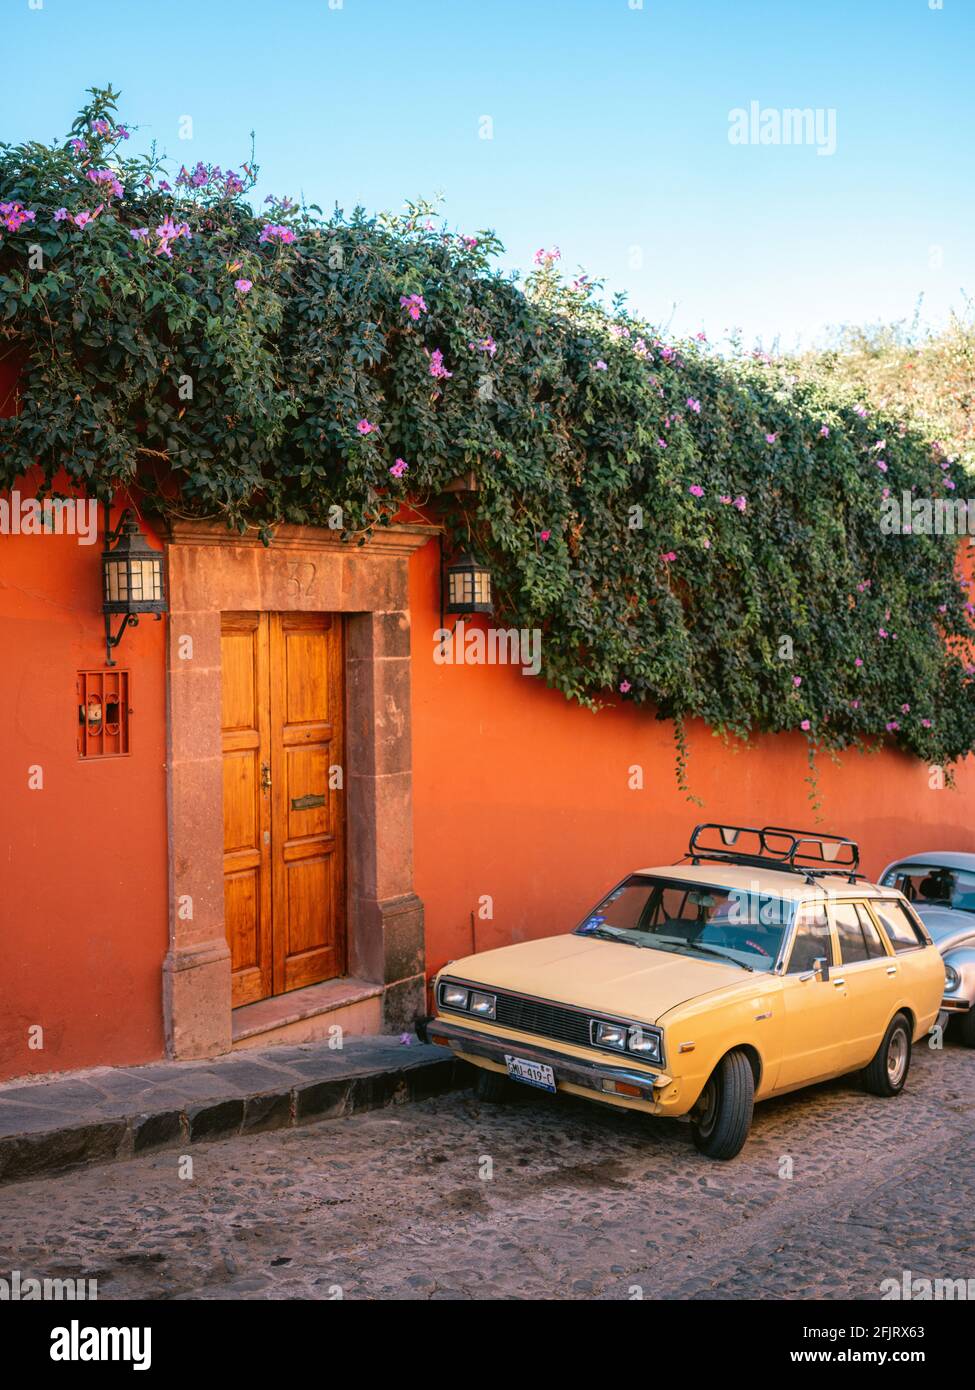 Bella Aldama Street nel centro della città - Via del Messico con l'auto - colorata fotografia di viaggio a San Miguel de Allende, Messico Foto Stock